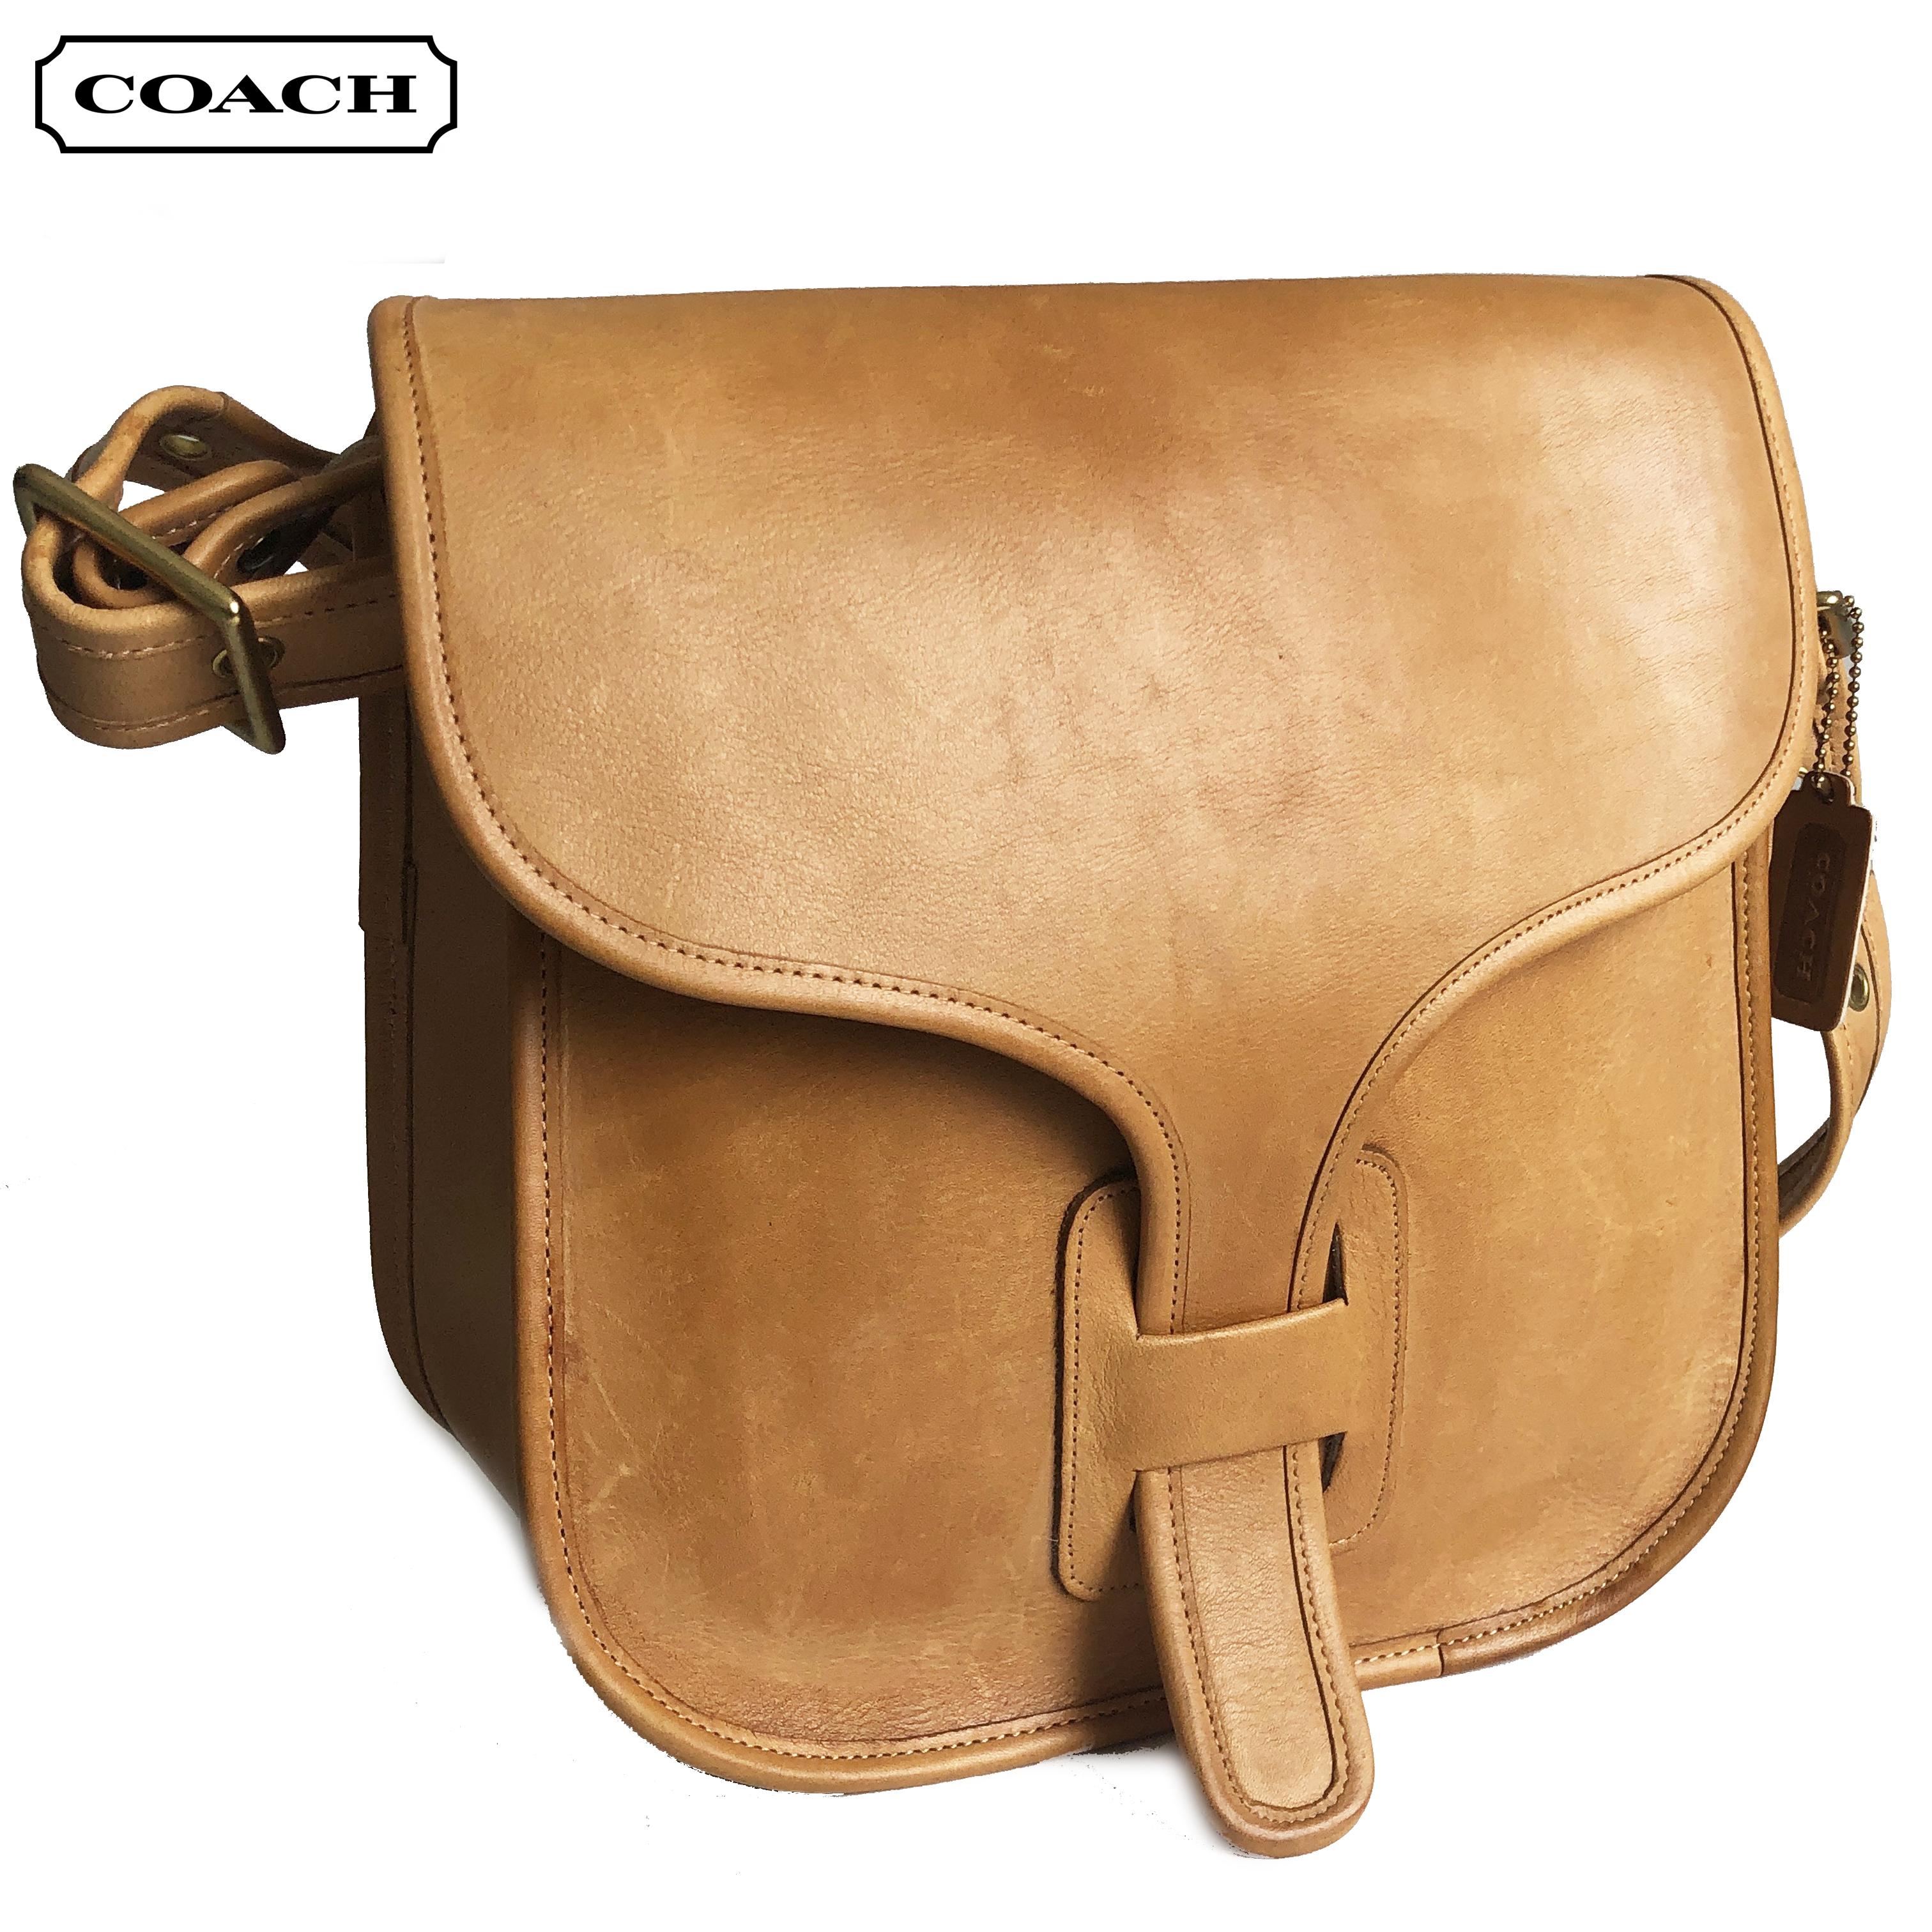 Authentique:: pré-owned:: vintage Coach Bag Large Courier Saddle Tan Leather:: made in NYC. Pré style creed ; appelé plus tard style 8920. Non doublé avec 1 poche zippée. D'occasion/vintage:: ce sac est super propre (ce que nous disons RAREMENT)::